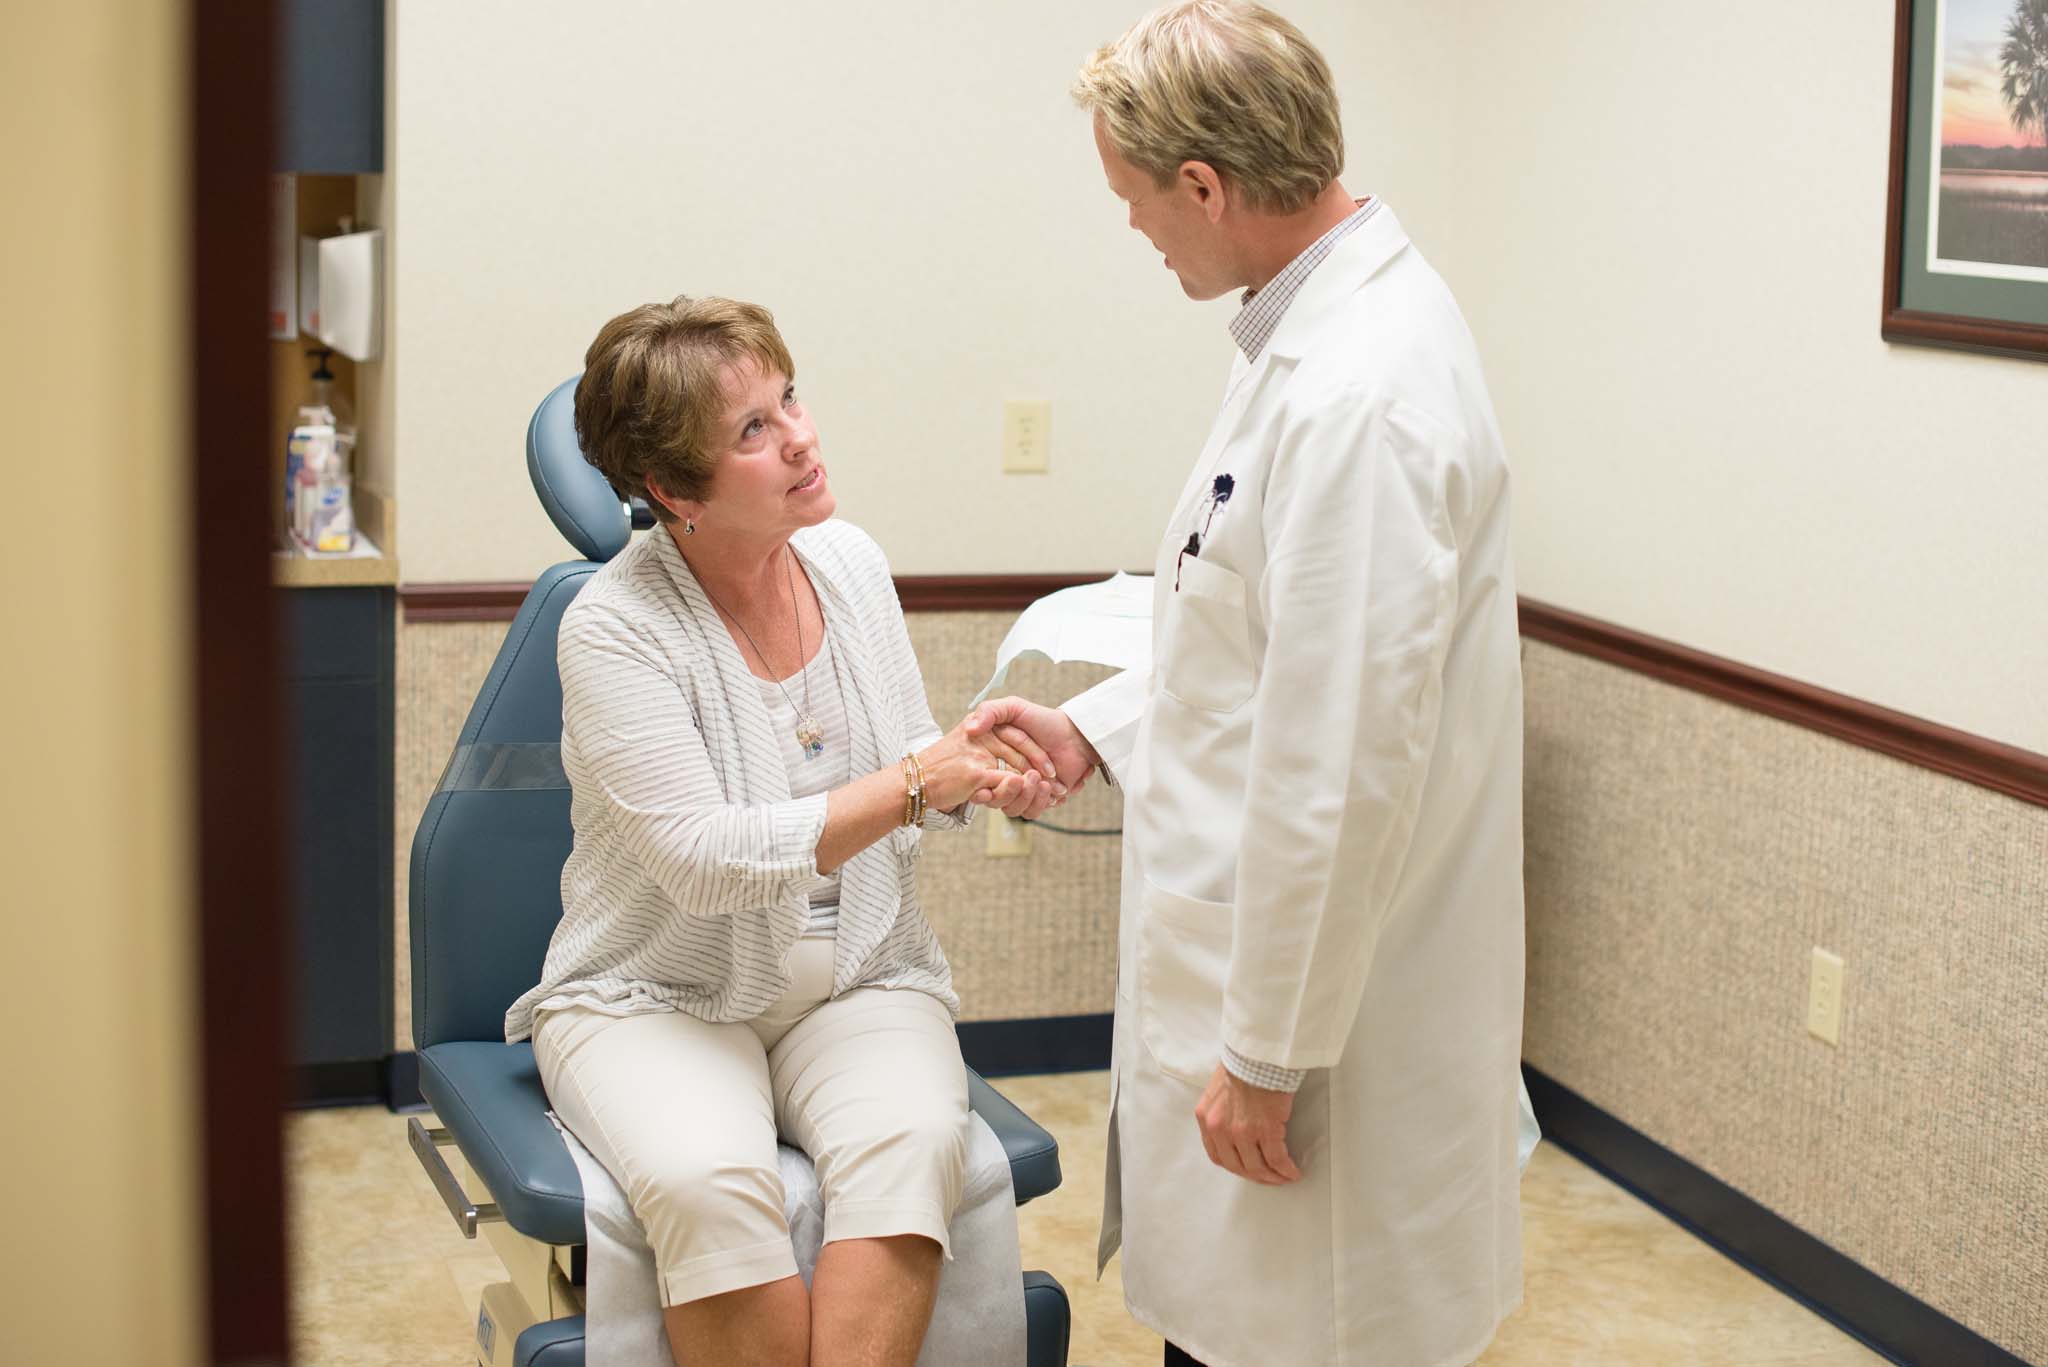 Patient & Doctor shaking hands